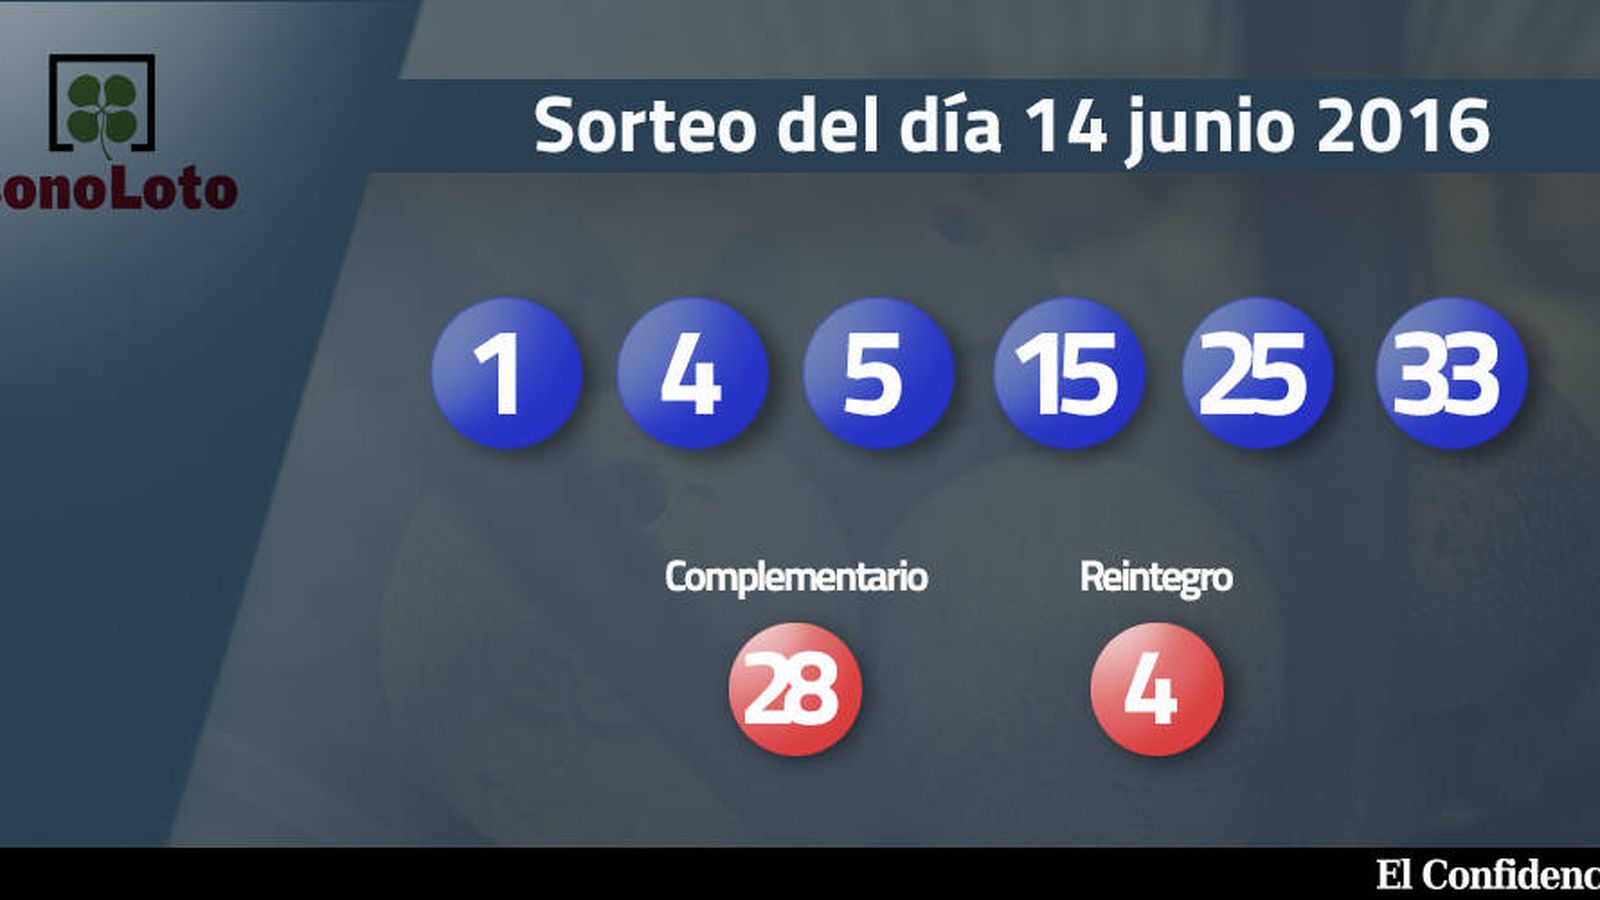 Foto: Resultados del sorteo de la Bonoloto del 14 junio 2016 (EC)